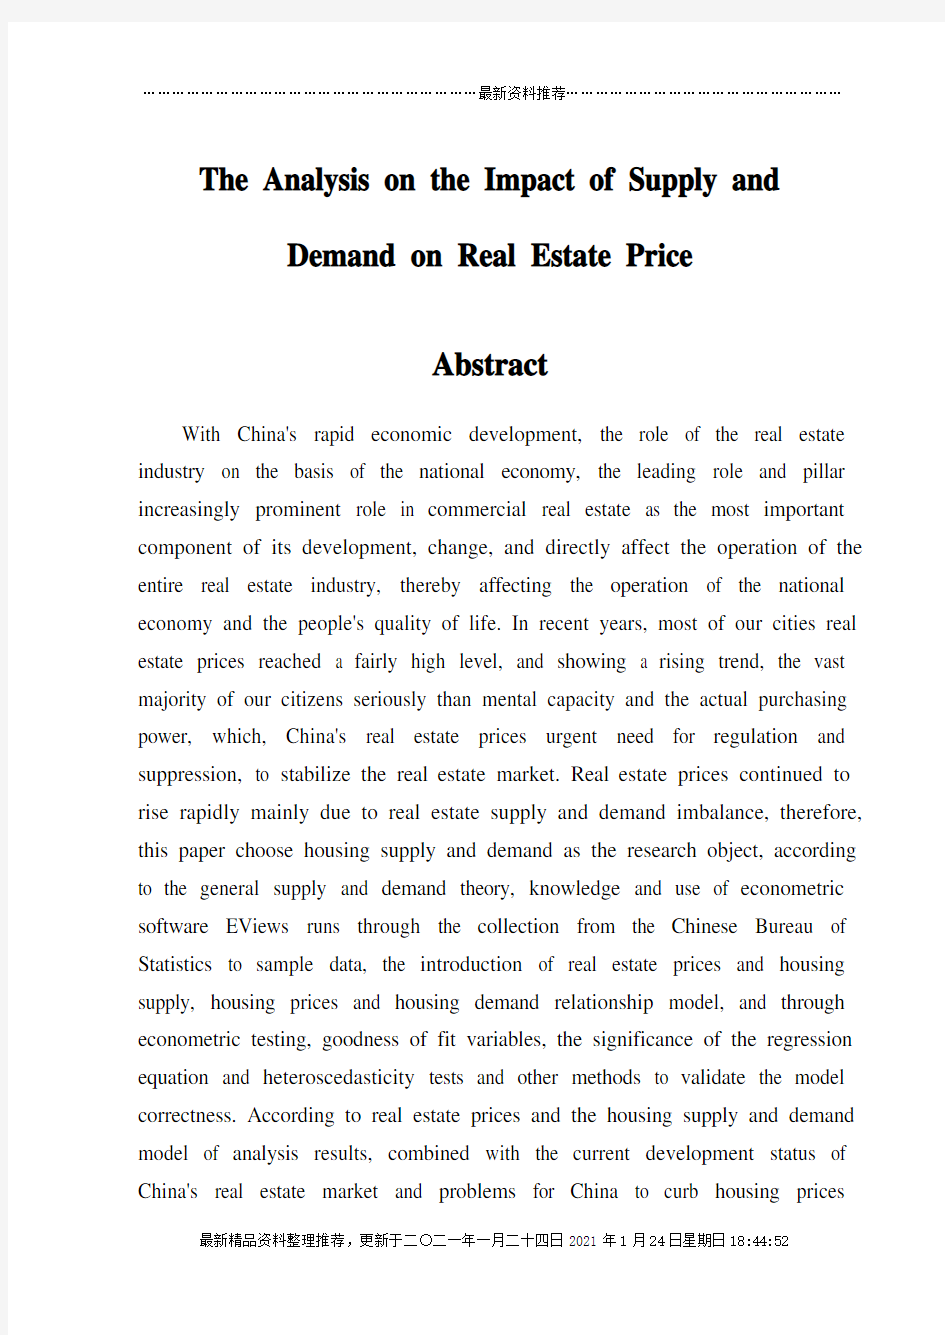 供求关系对房地产价格的影响分析